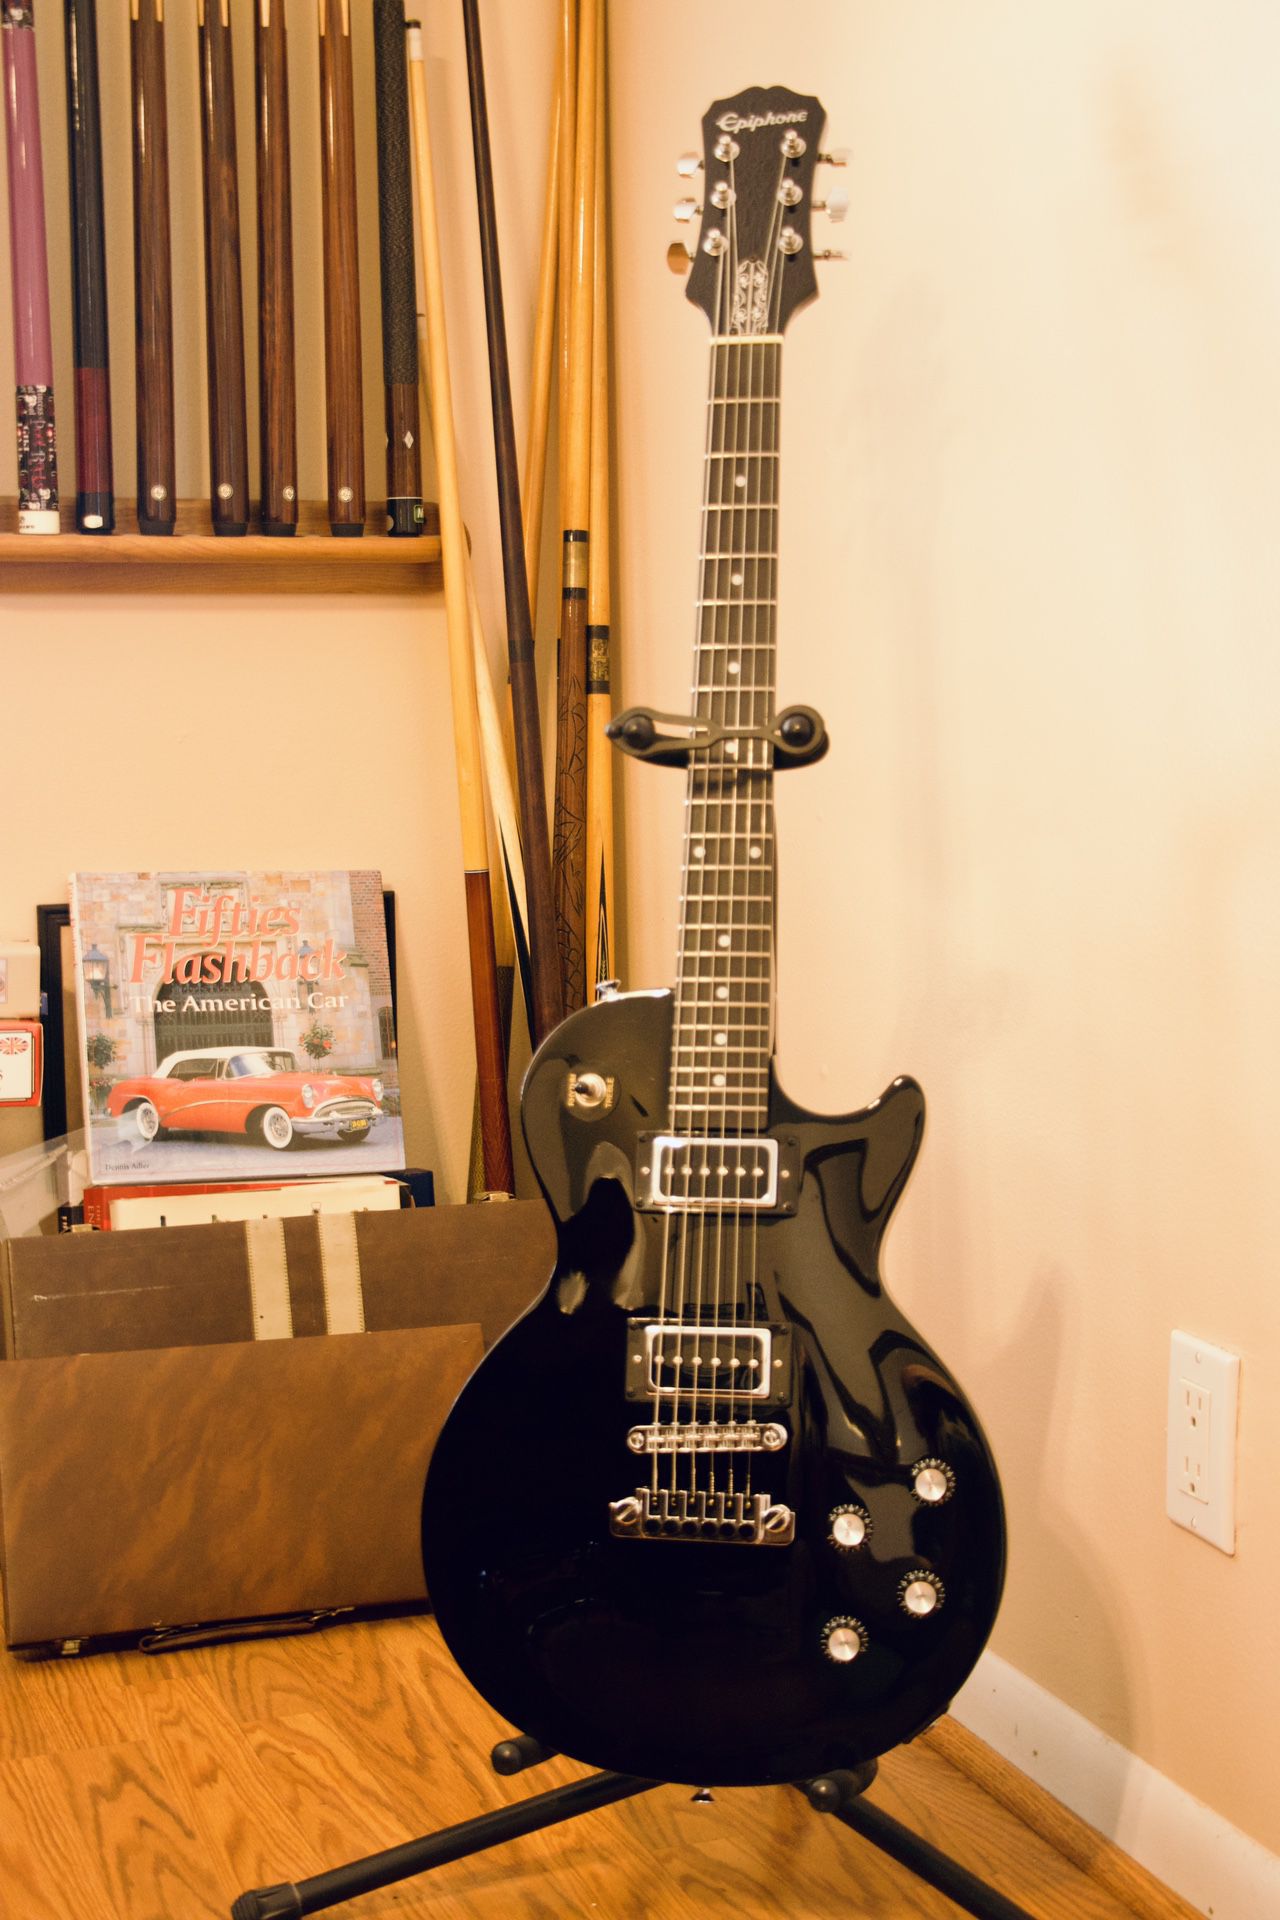 Electric Guitar - Les Paul